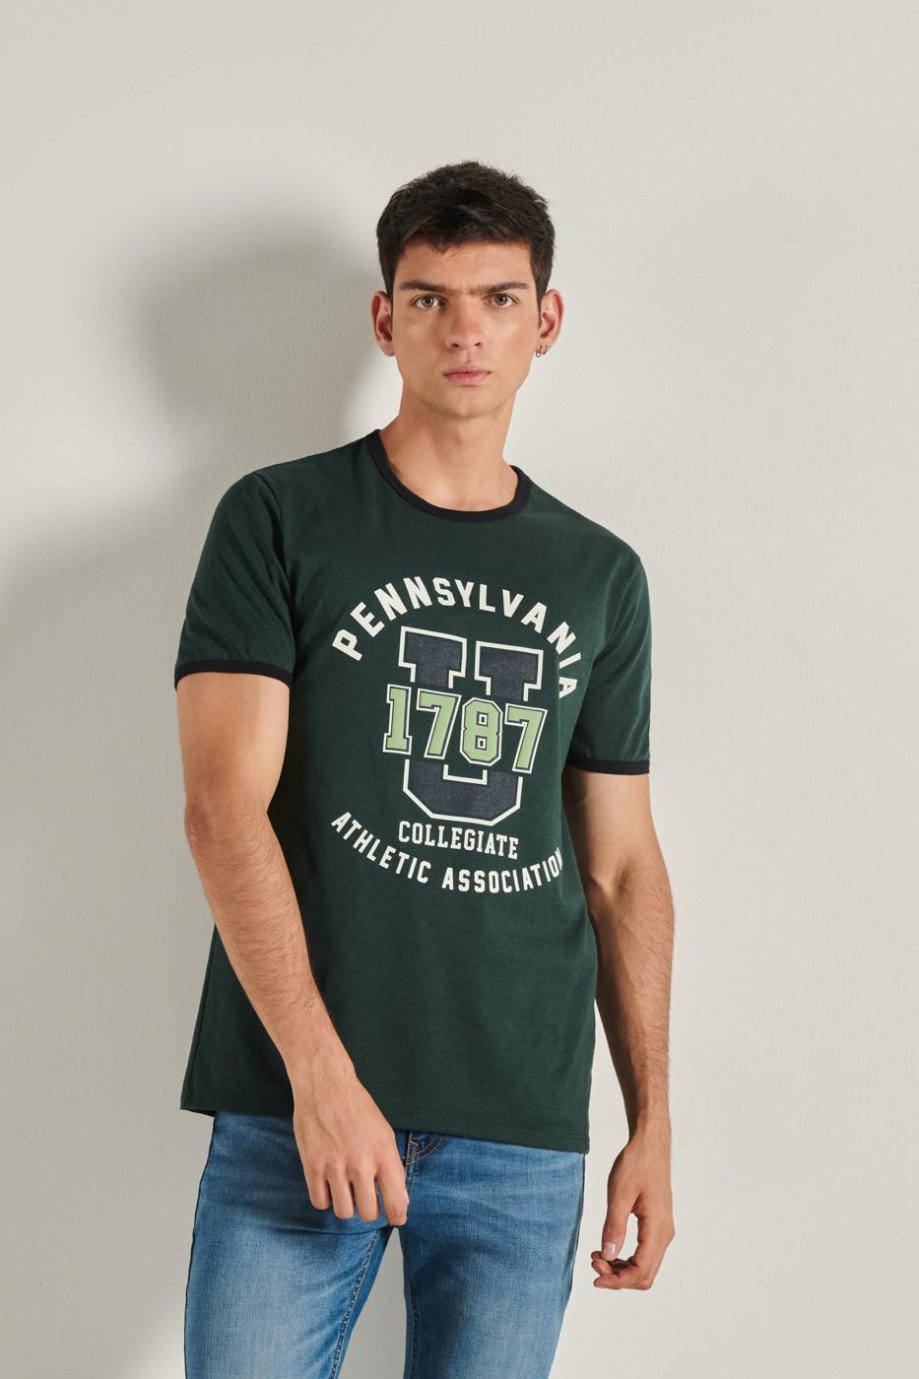 Camiseta verde oscura con manga corta, contrastes y diseño college